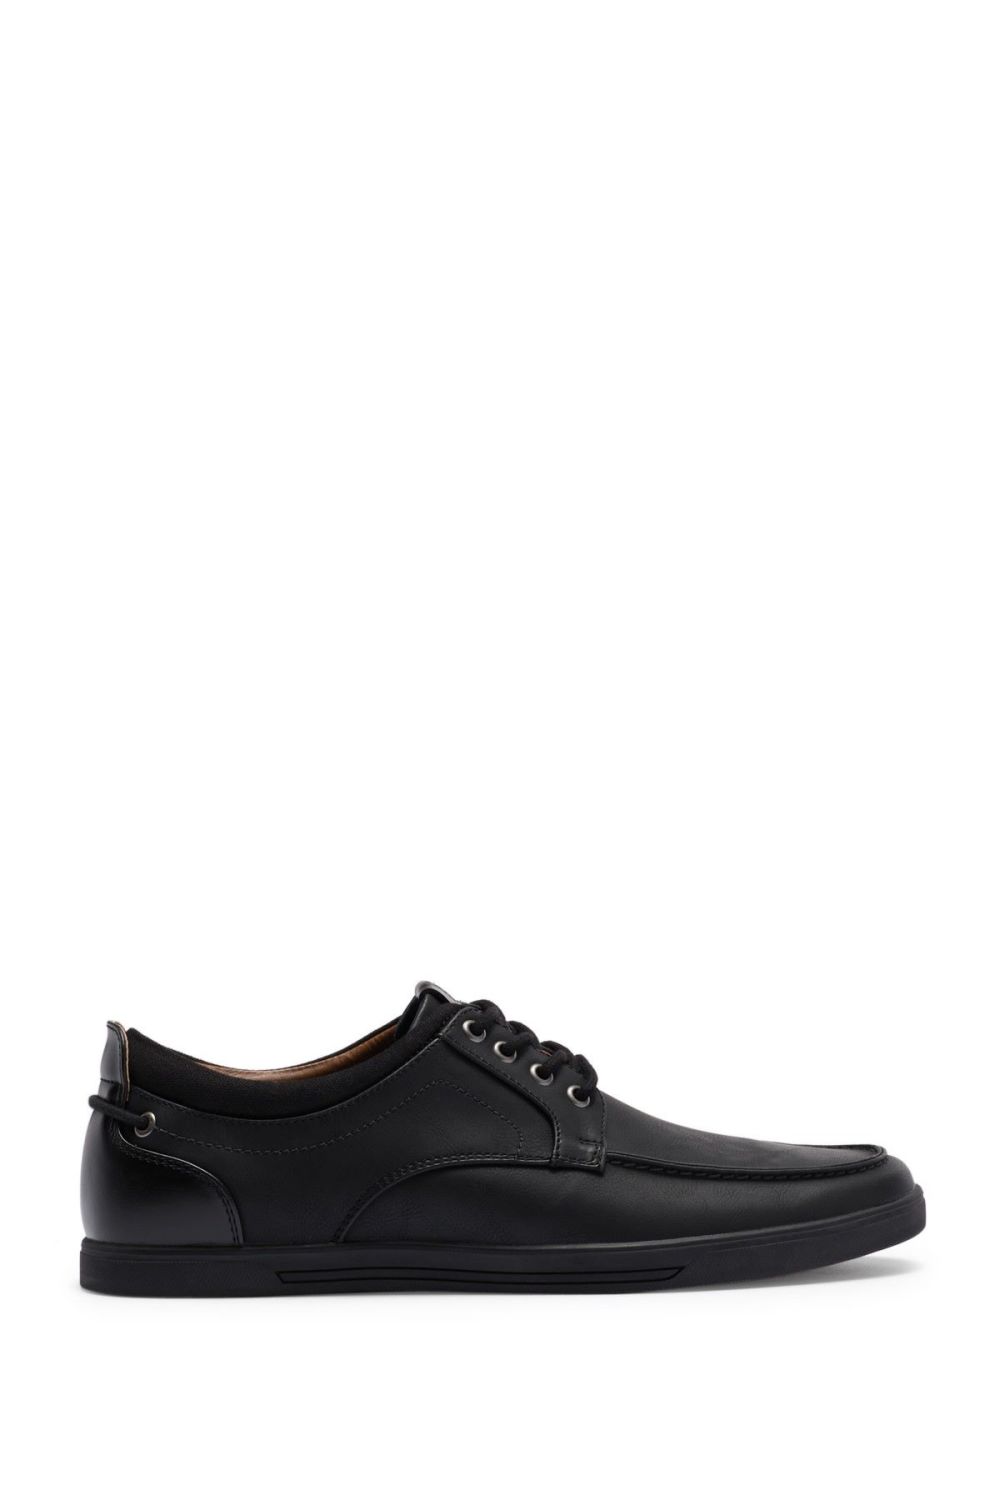 Black Moc Toe Sneaker|Size: 9.5